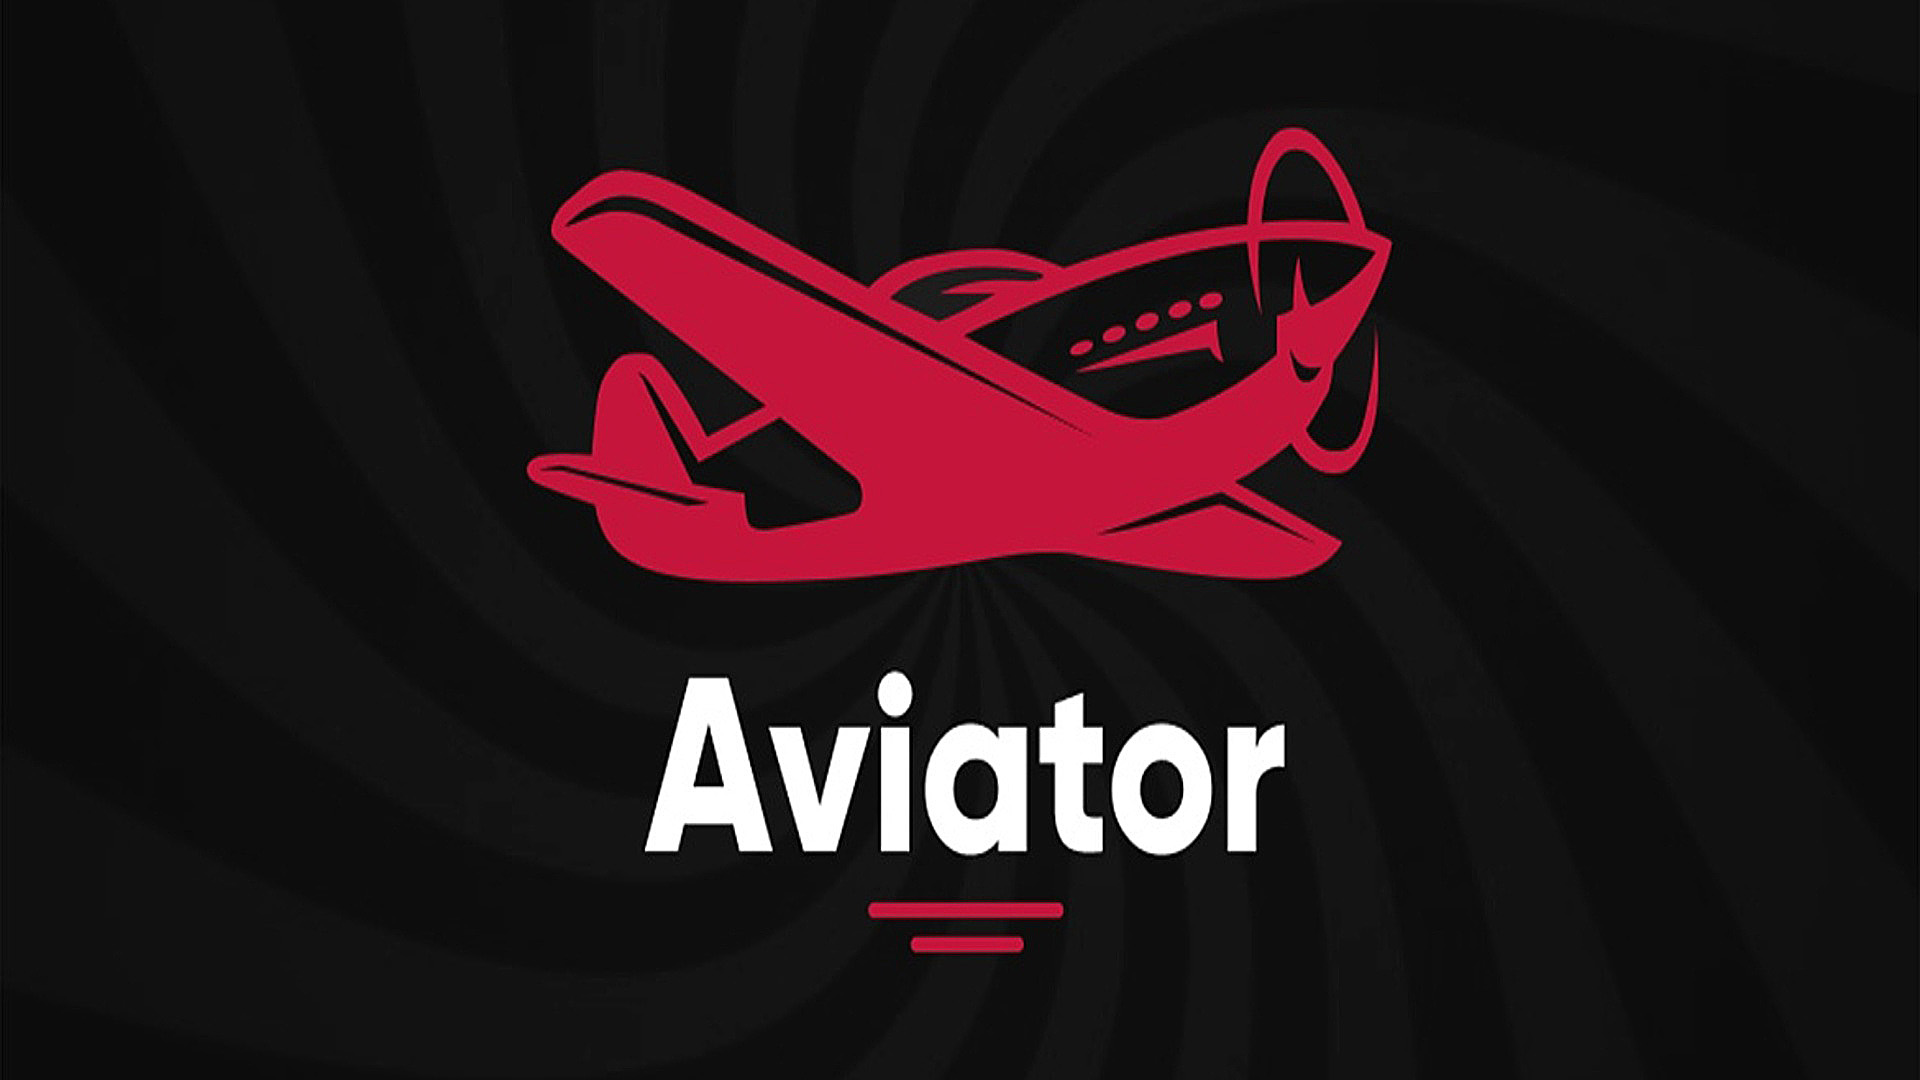 1win игра самолетик на деньги. Aviator spribe. Авиатор игра в казино. Авиатор казино логотип.